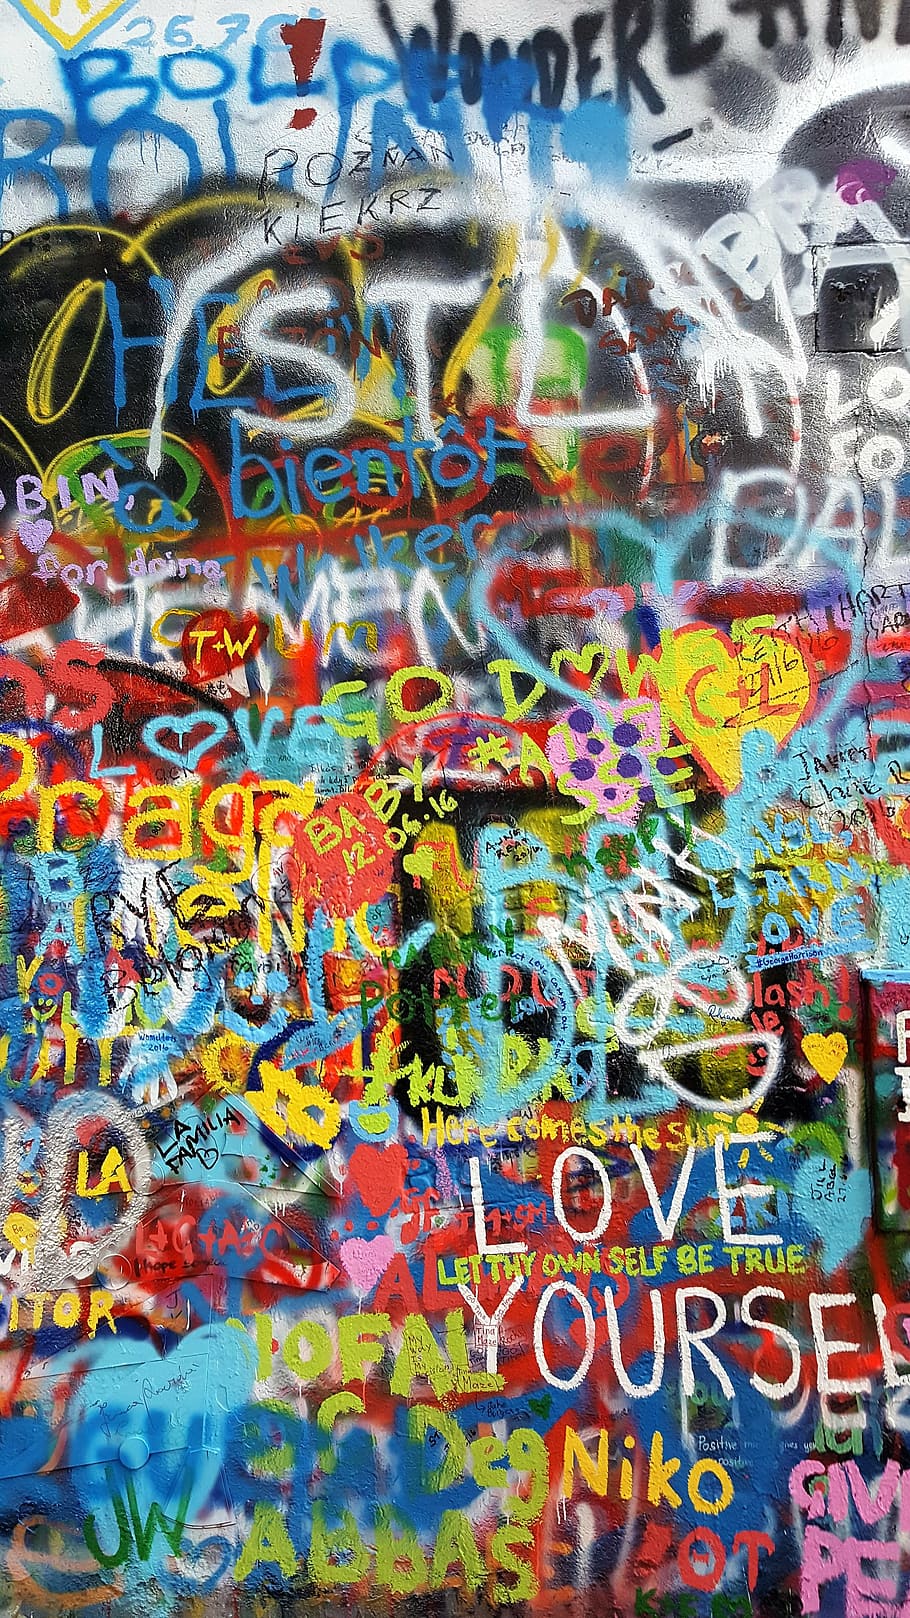 ジョンレノンの壁, プラハ, カラフル, 落書き, 塗料, 色, アート, 壁, レノニズム, アートワーク